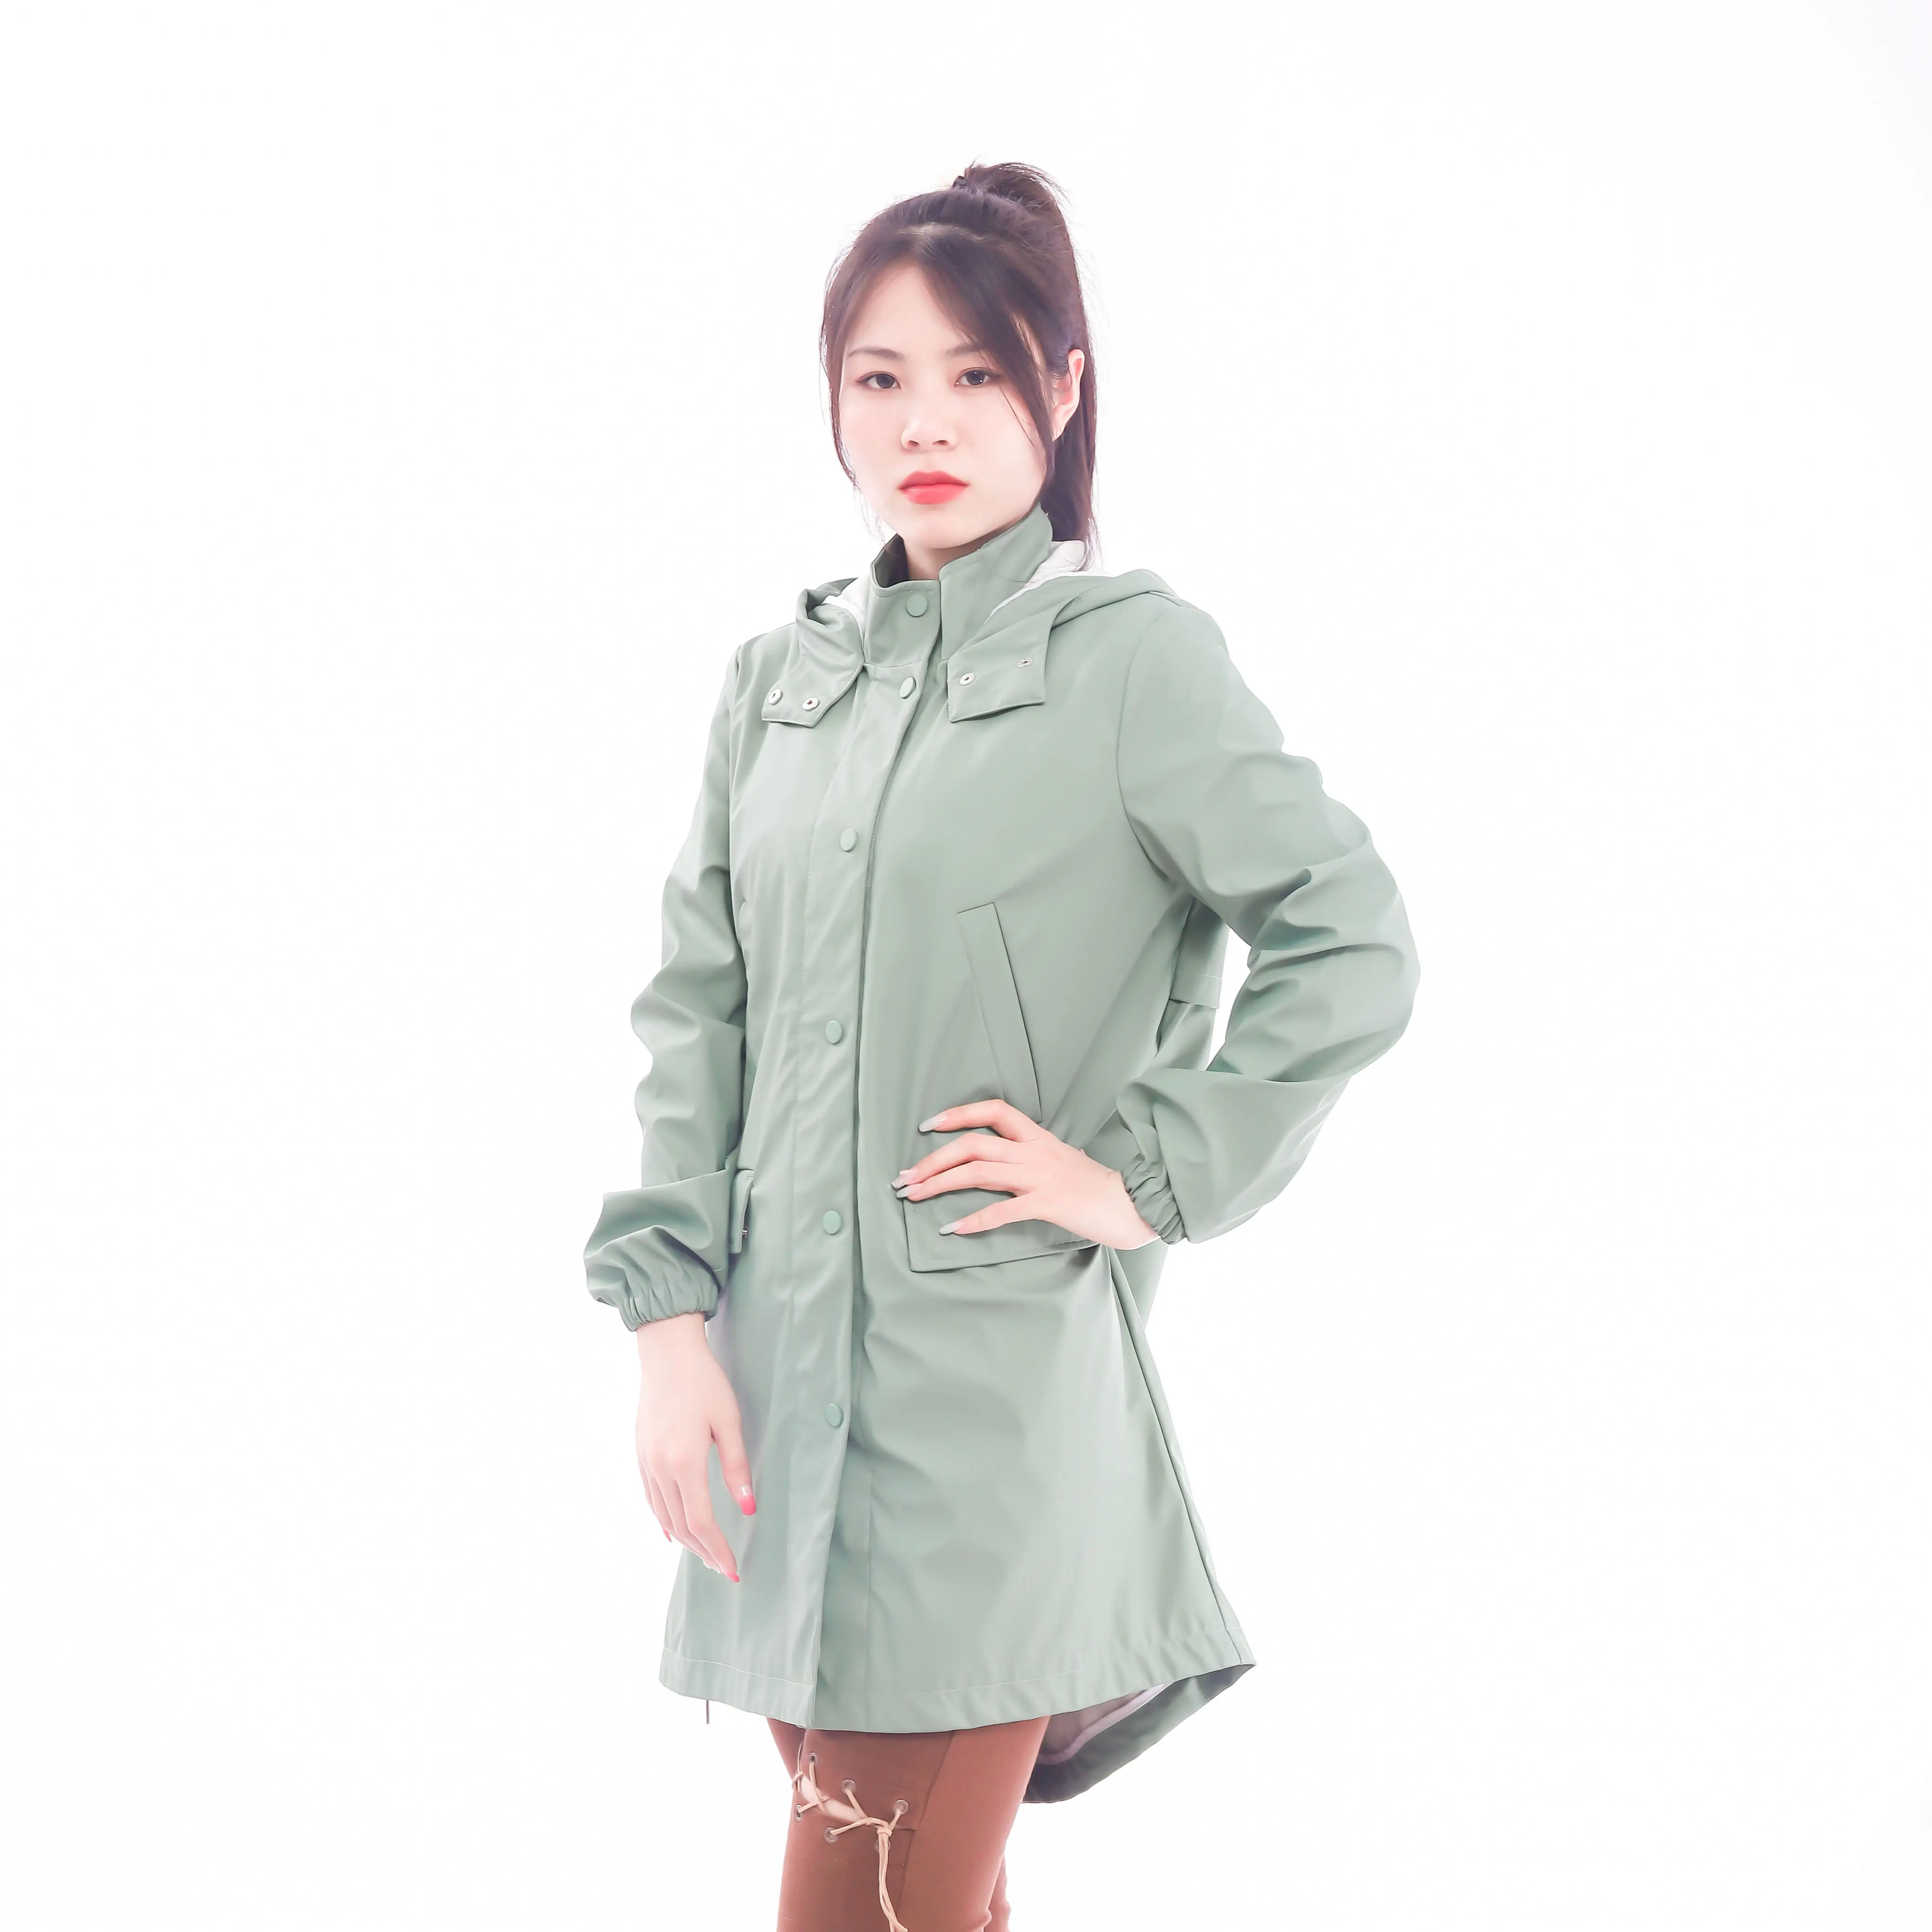 Elegant Light Fashion Korean Style Mid-length Trench Coat For Women 2022 Popular Overcoat For Spring Autumn Long Jacket